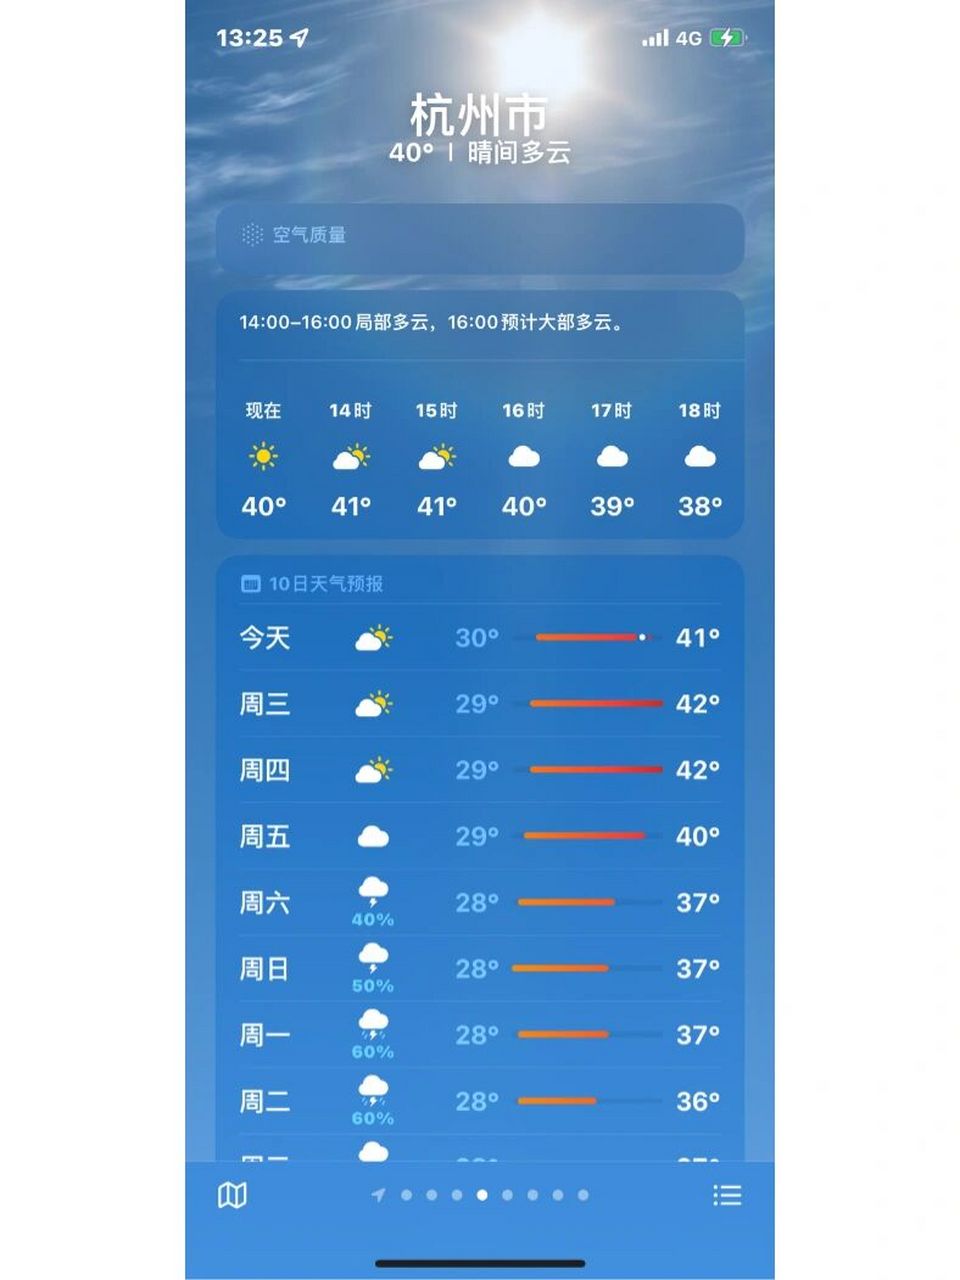 杭州天气 热不活了 家人们010101040404